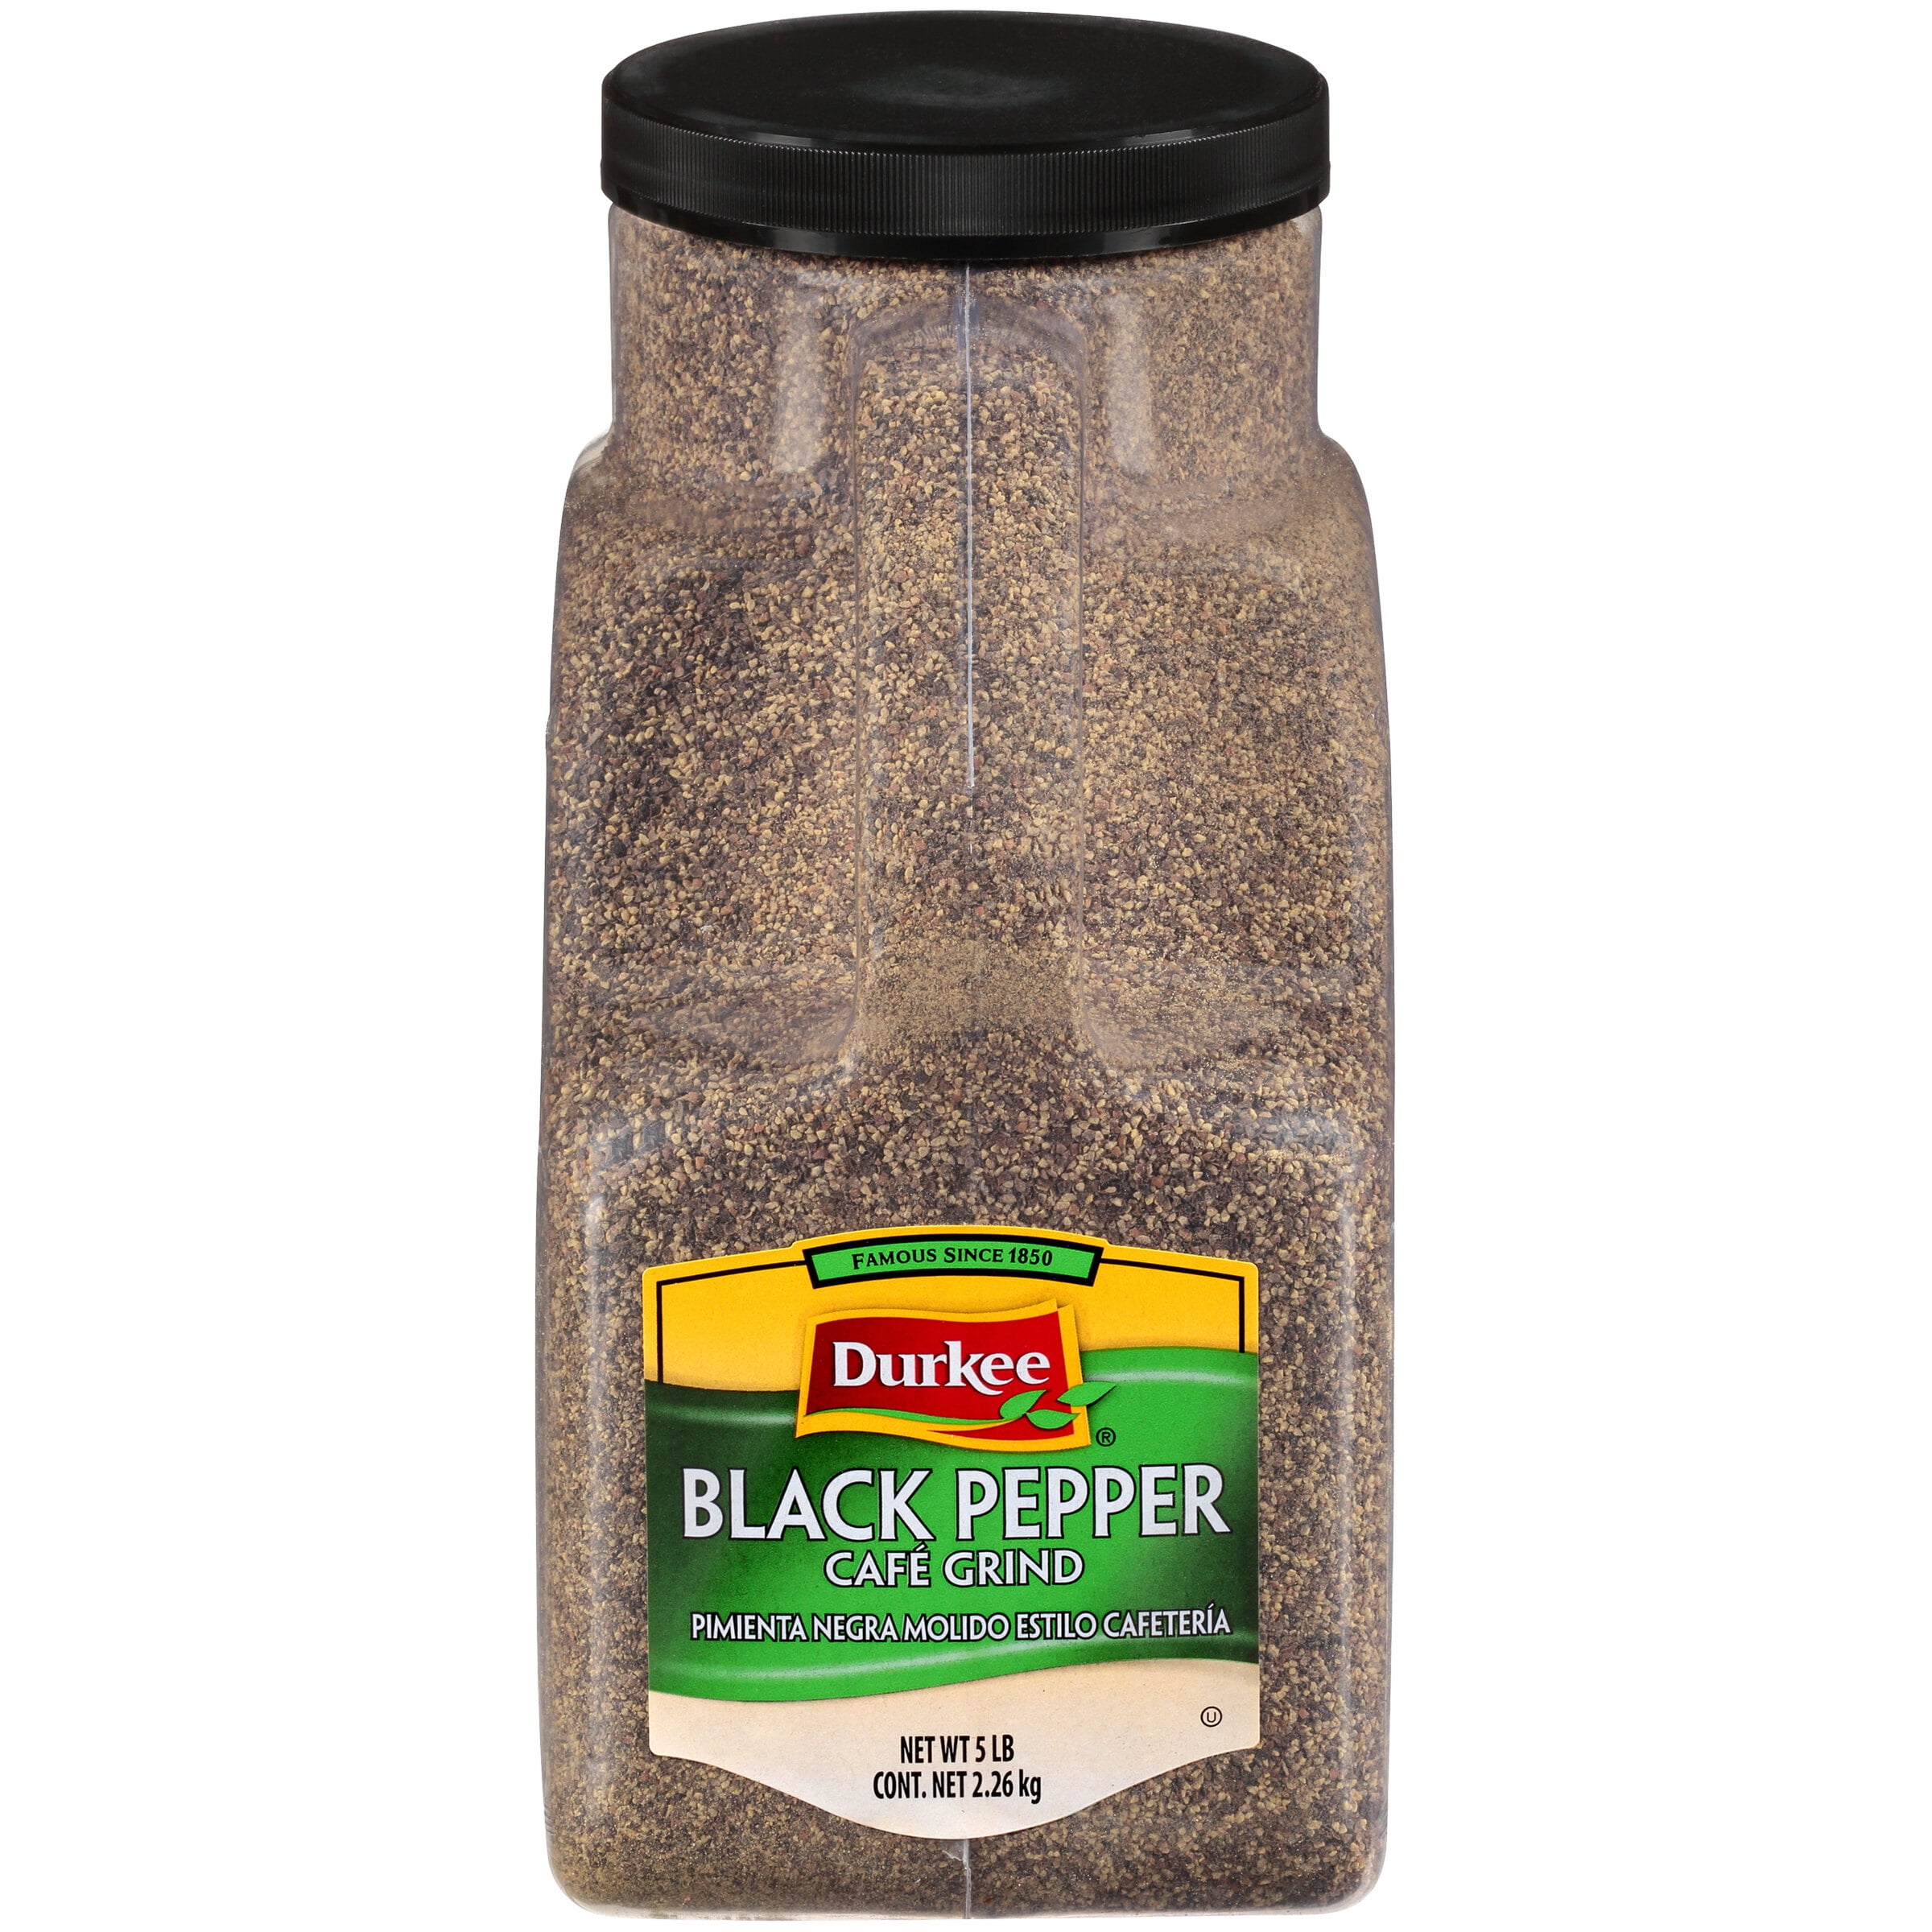 Black Pepper Cafe (Restaurant) Grind